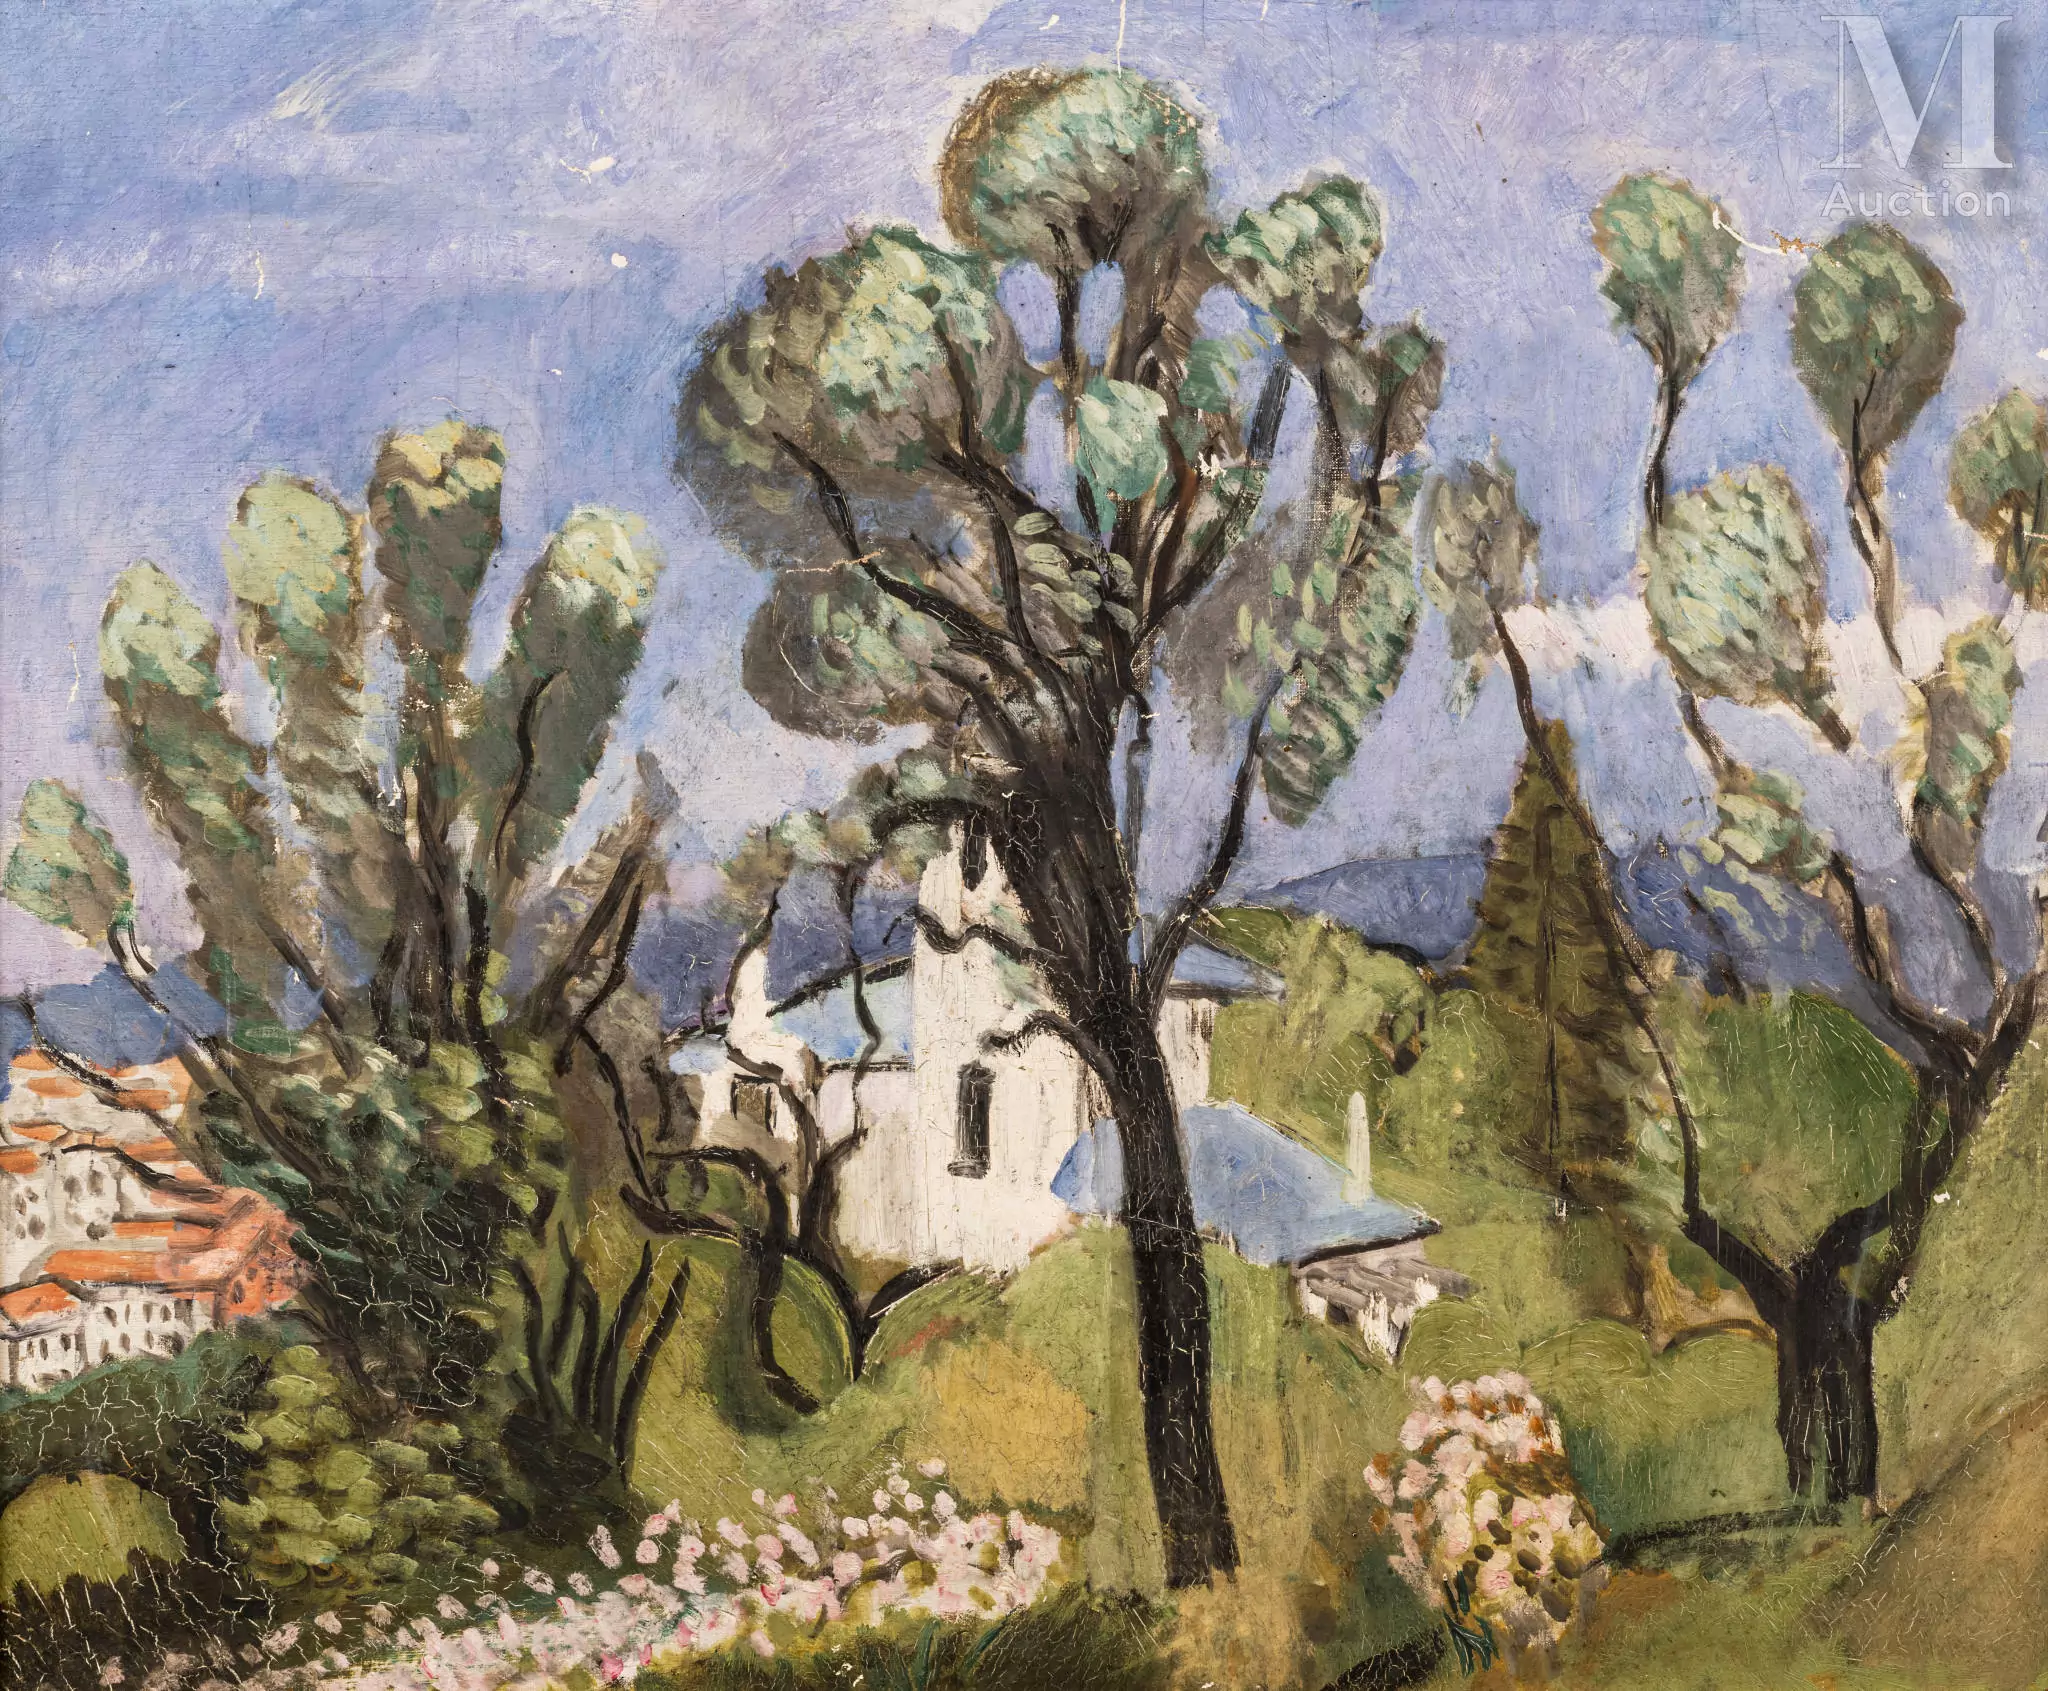 Henri MATISSE (Cateau-Cambrésis 1869 - Nice 1954)
La villa bleue à Nice, 1918
Huile sur toile